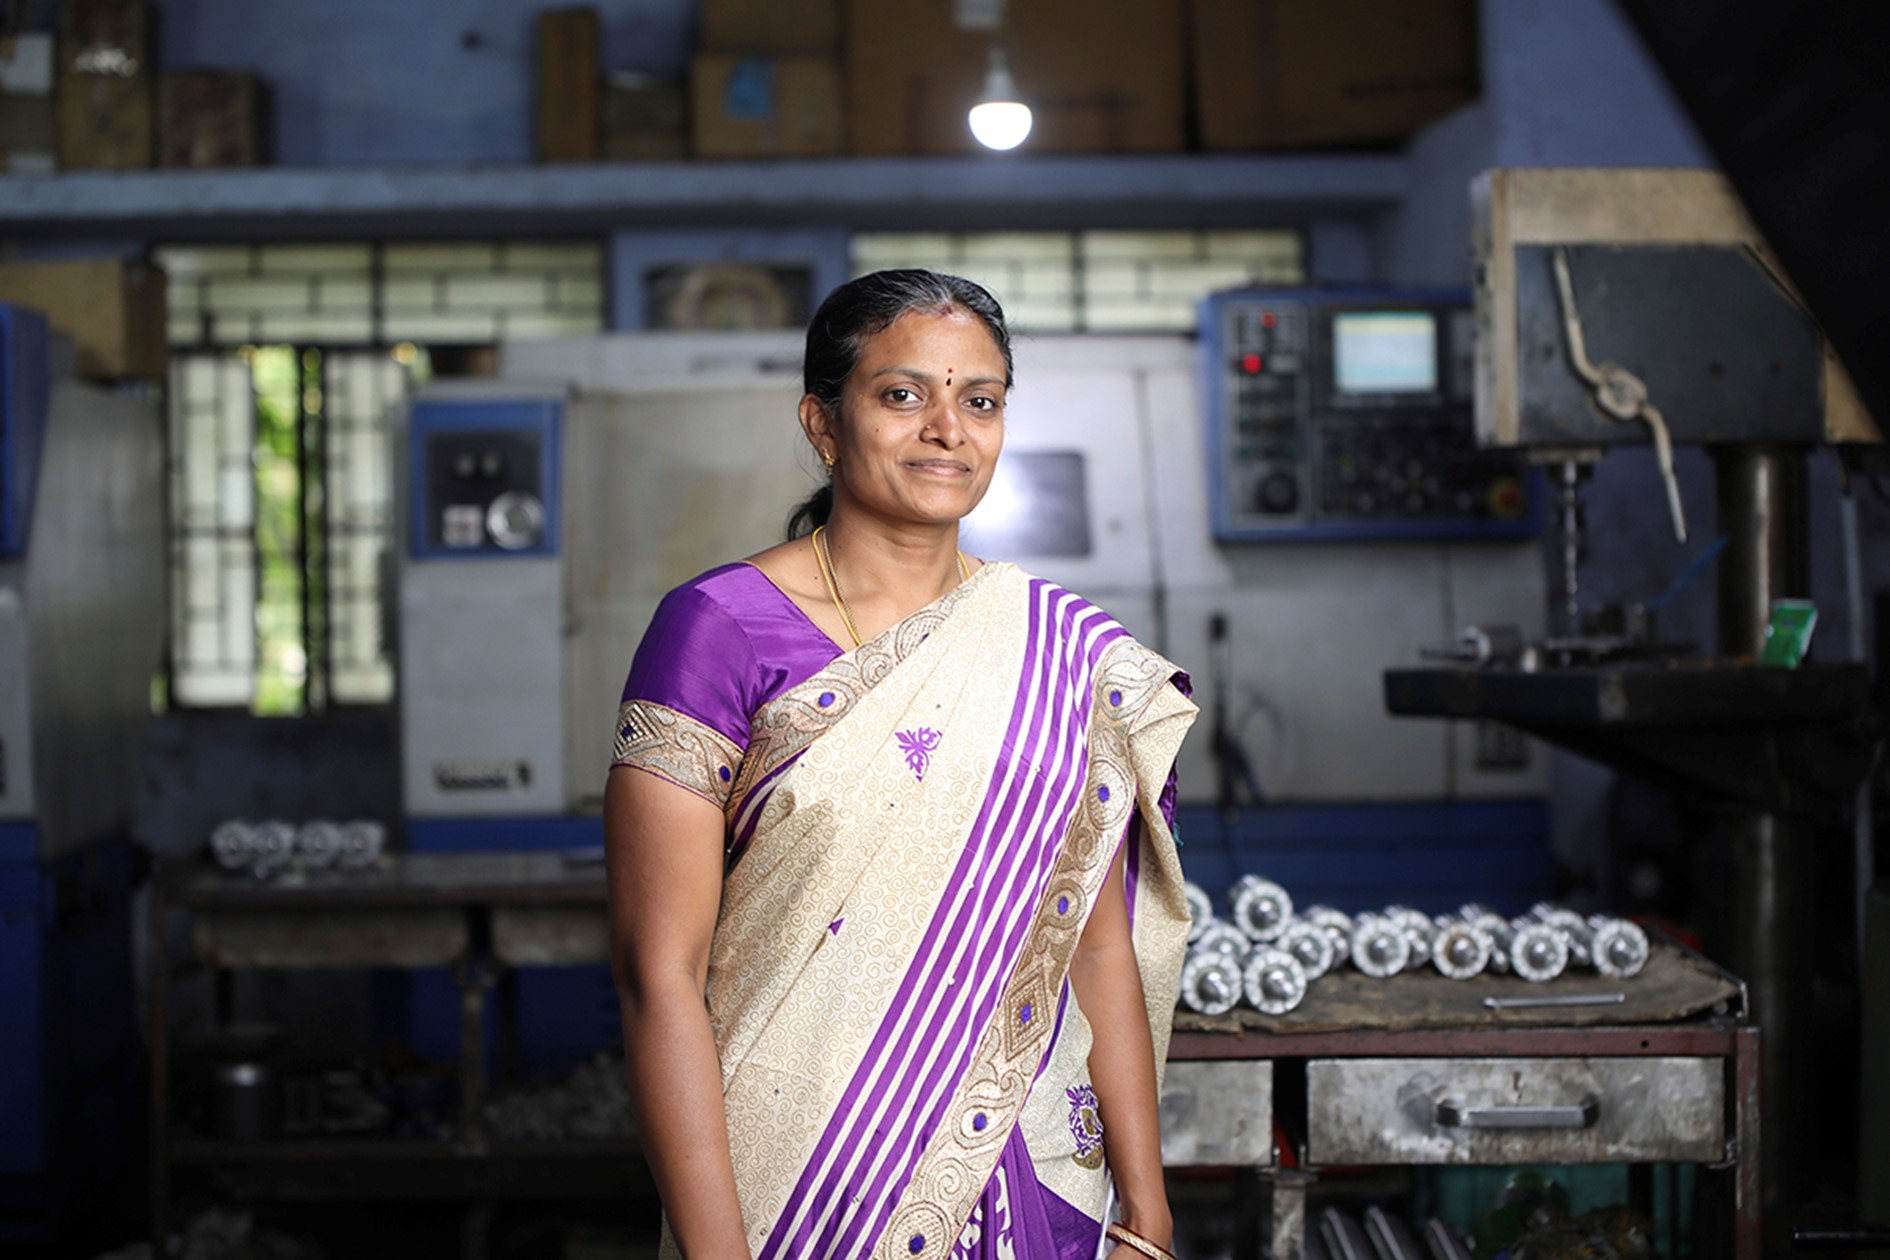 Moderne fintechnologie helpt indiase ondernemers gemakkelijker een lening af te sluiten